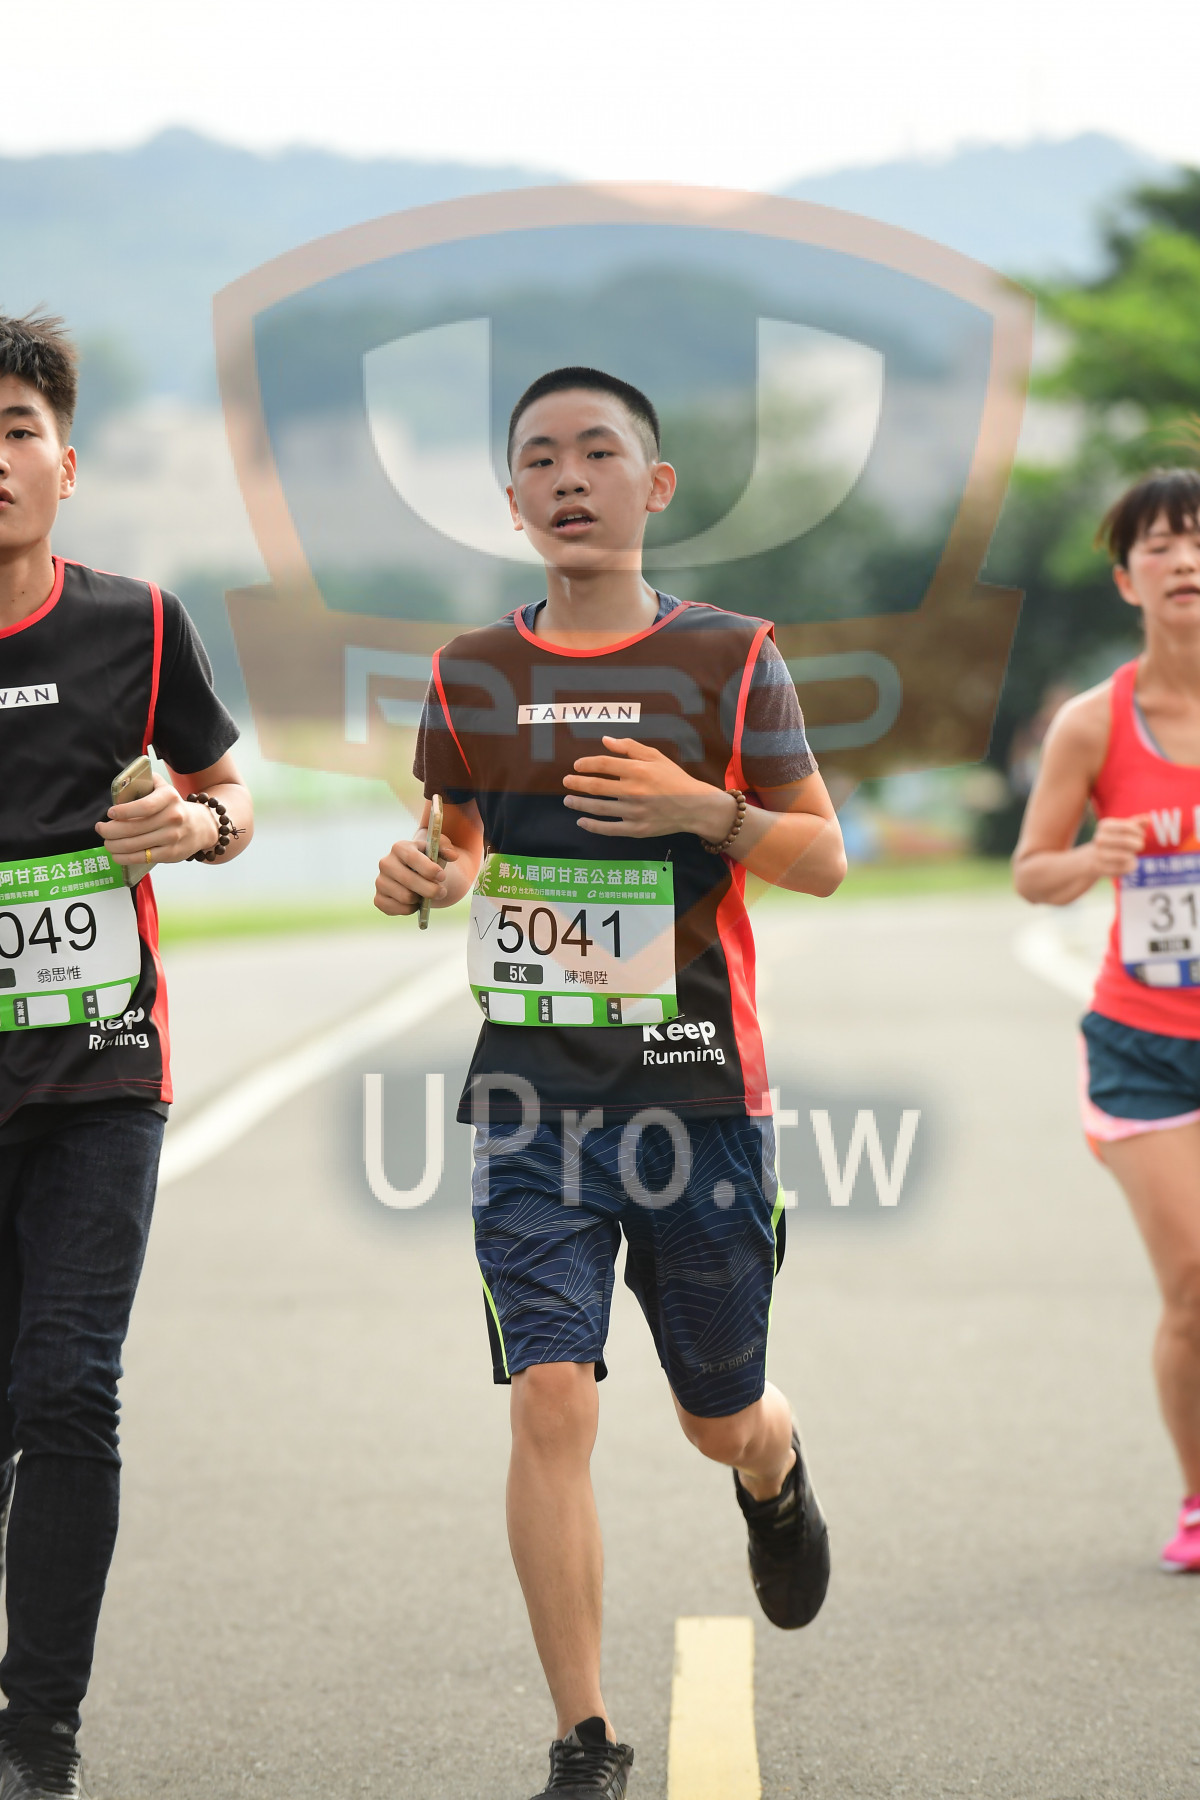 AN,TAIWAN,,E,!,049,5041,,5K,Keep,Running|終點1|中年人